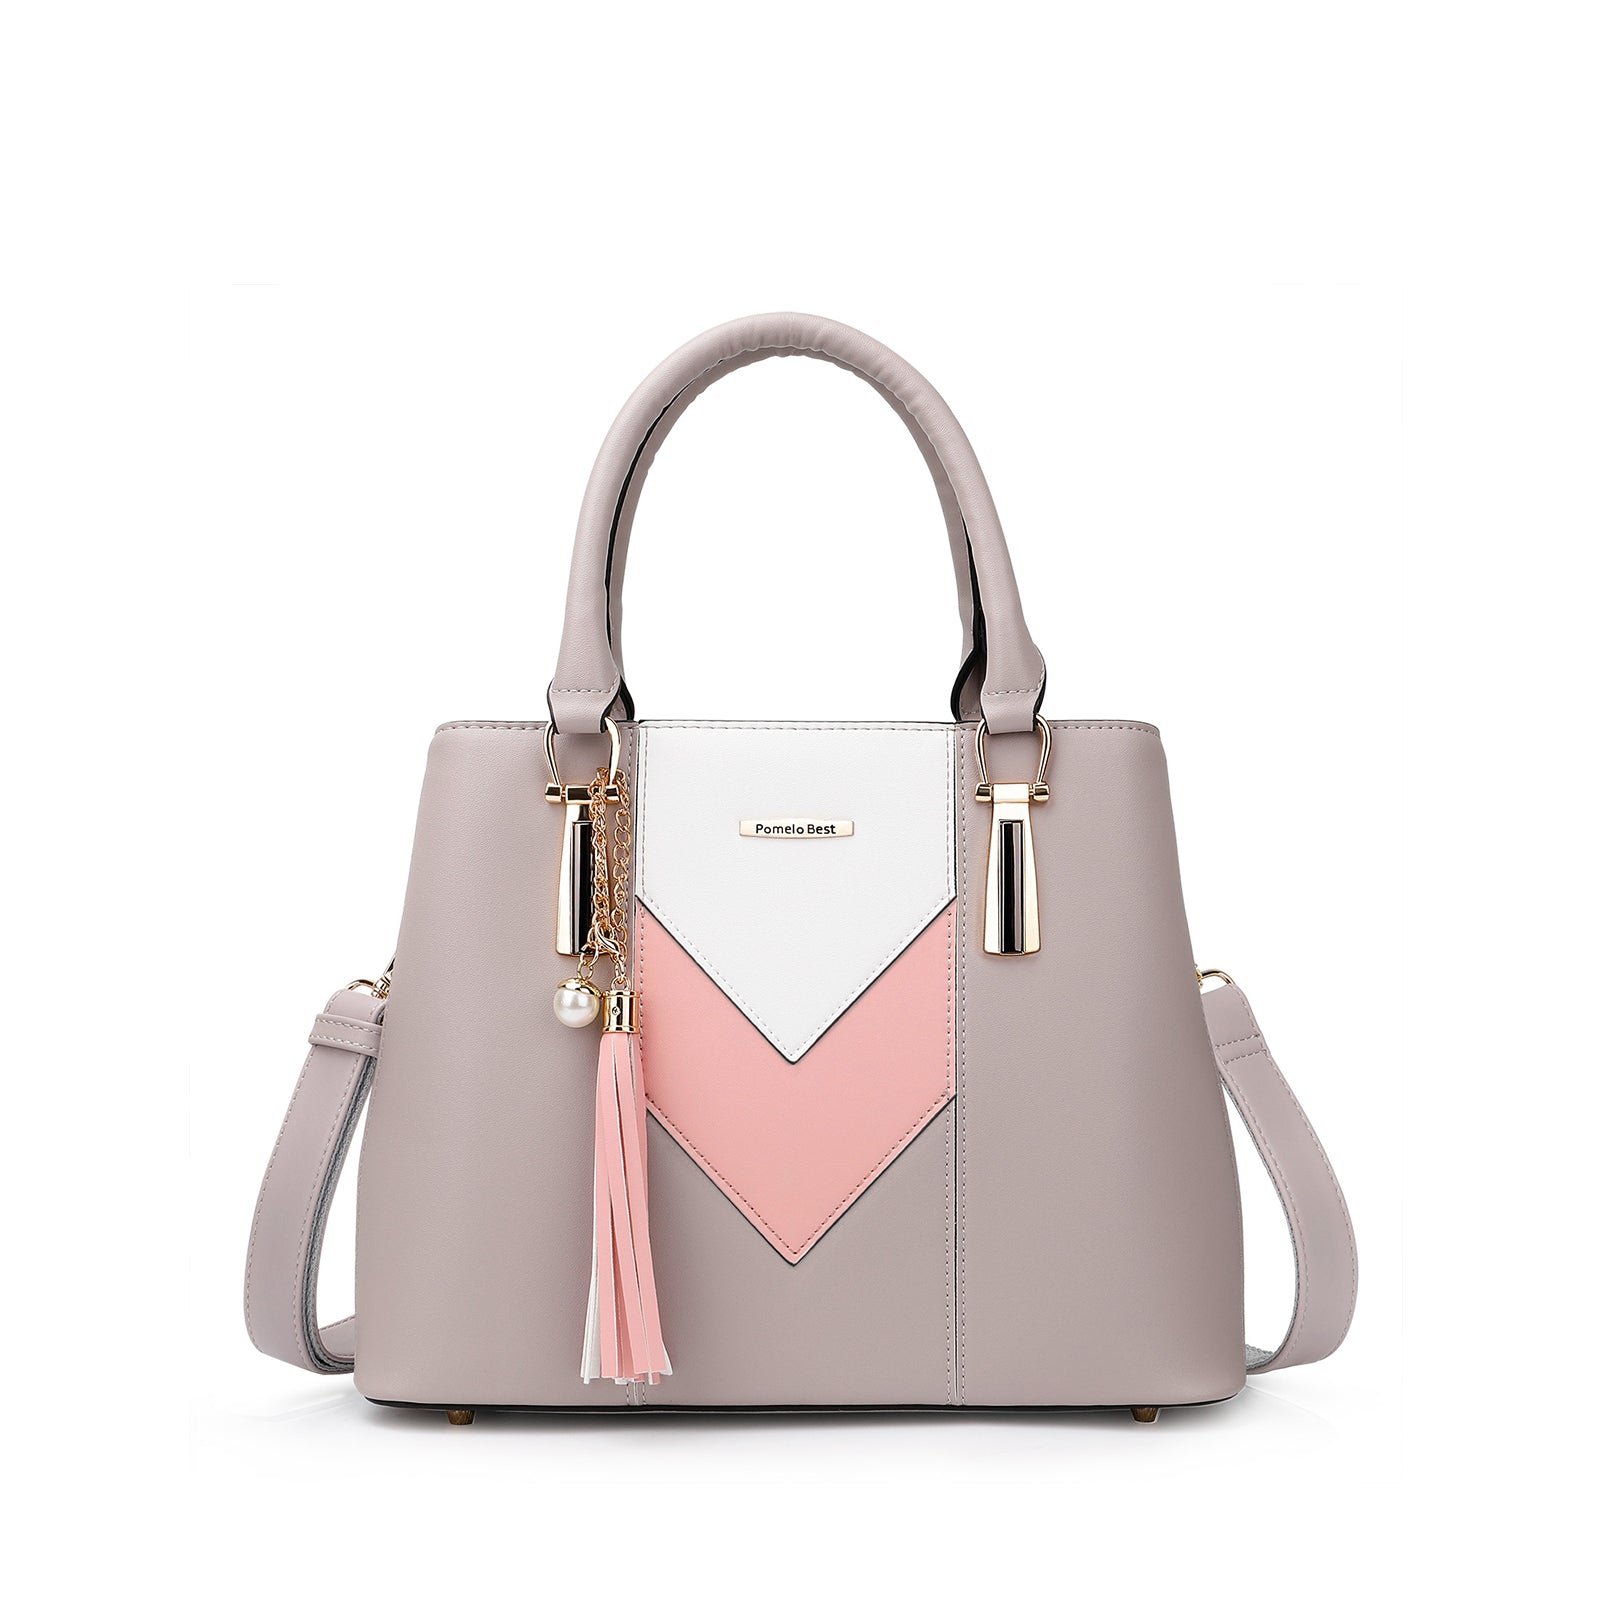 V-shaped handbag